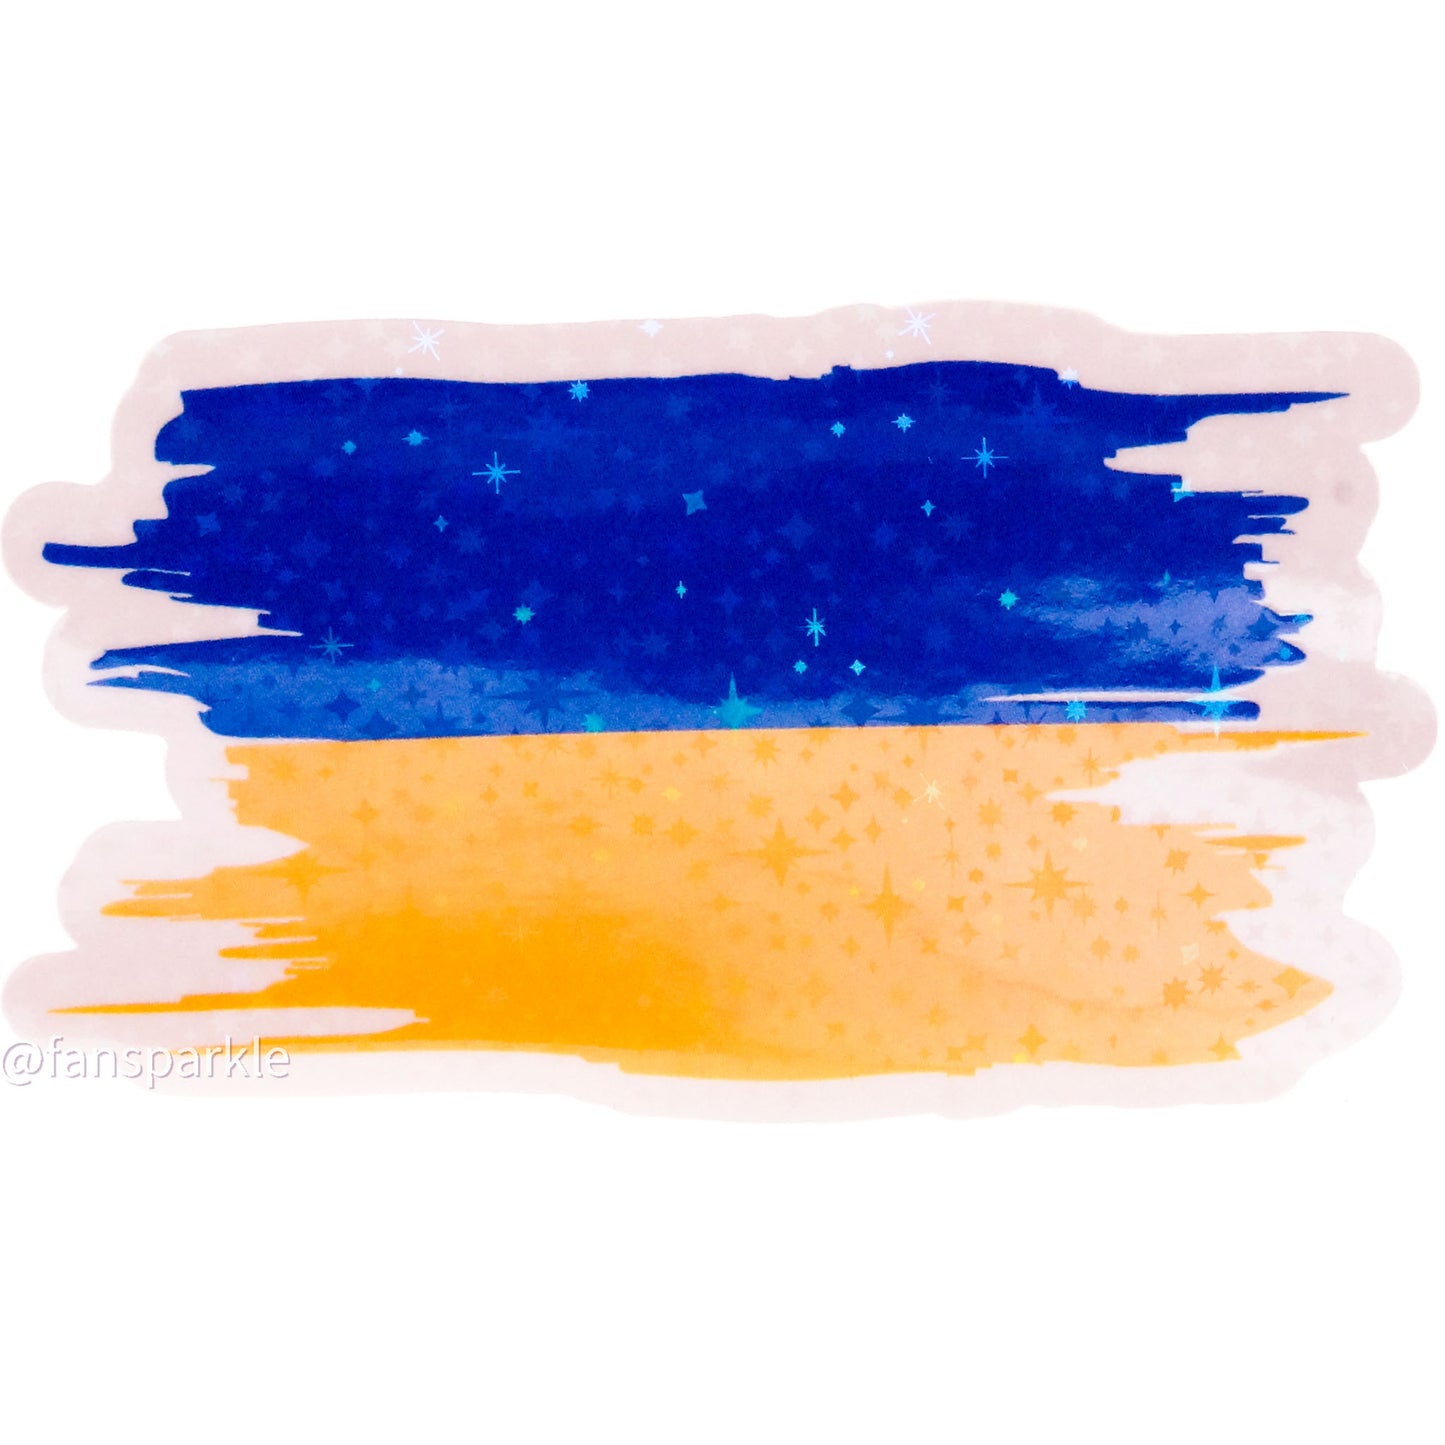 Ukraine Flag Sticker - Fan Sparkle